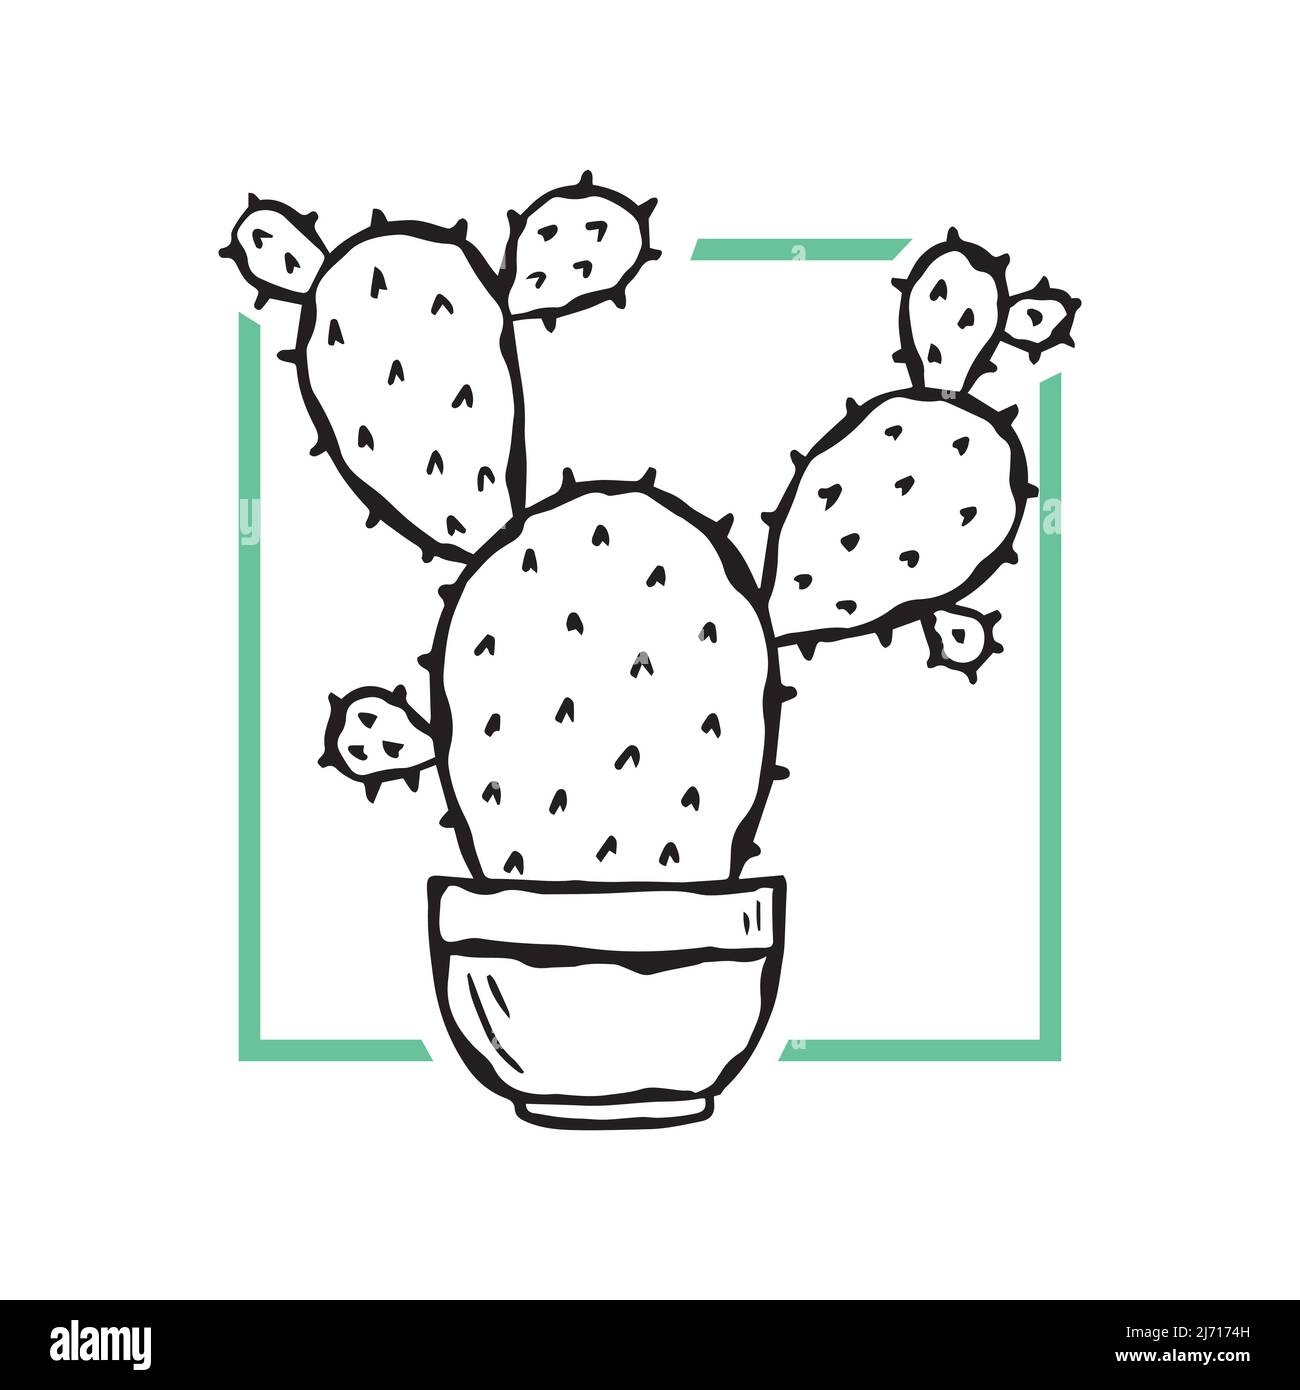 Vektor-Mode-Illustration eines Kaktus in einem Topf. Modisches, minimalistisches Poster. Stock Vektor